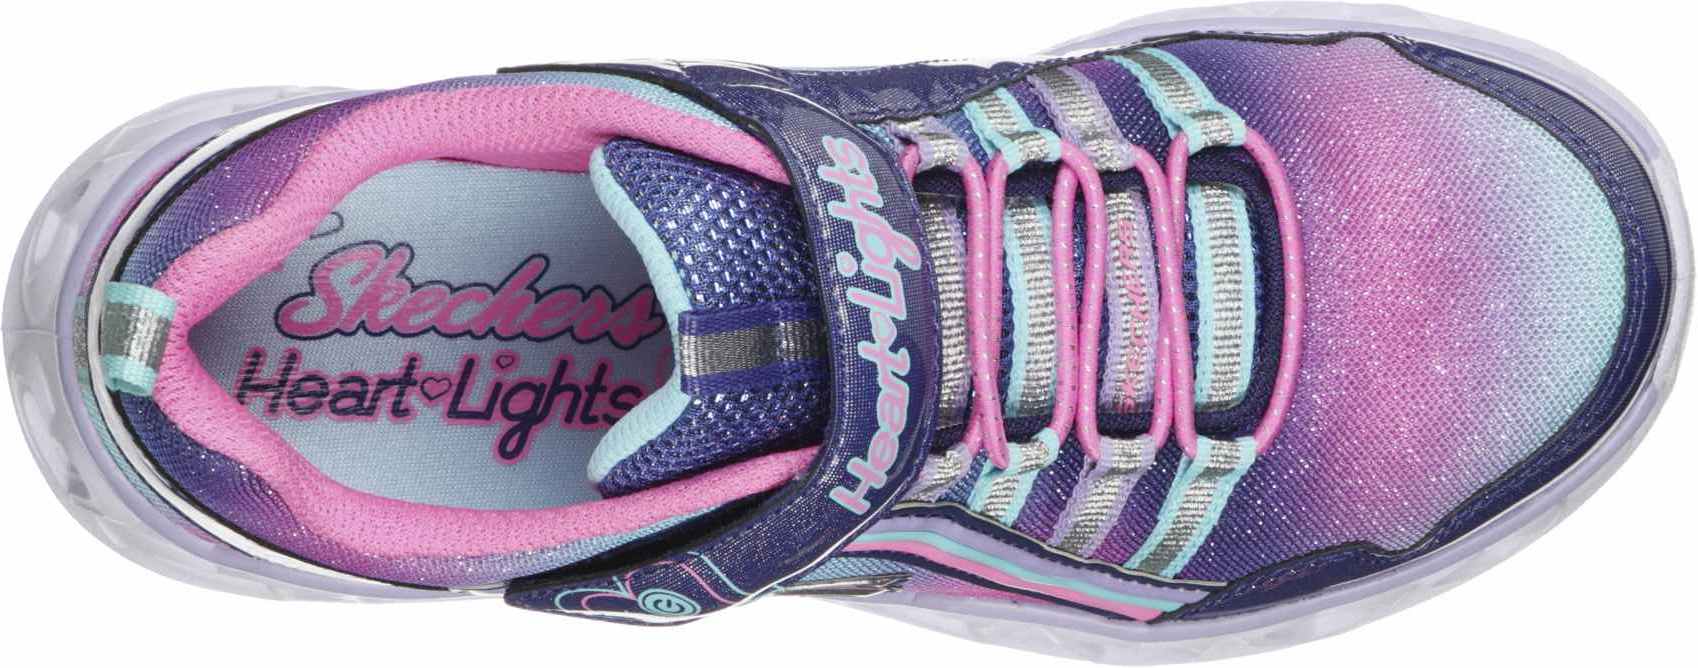 Blinkende Sneaker für Mädchen